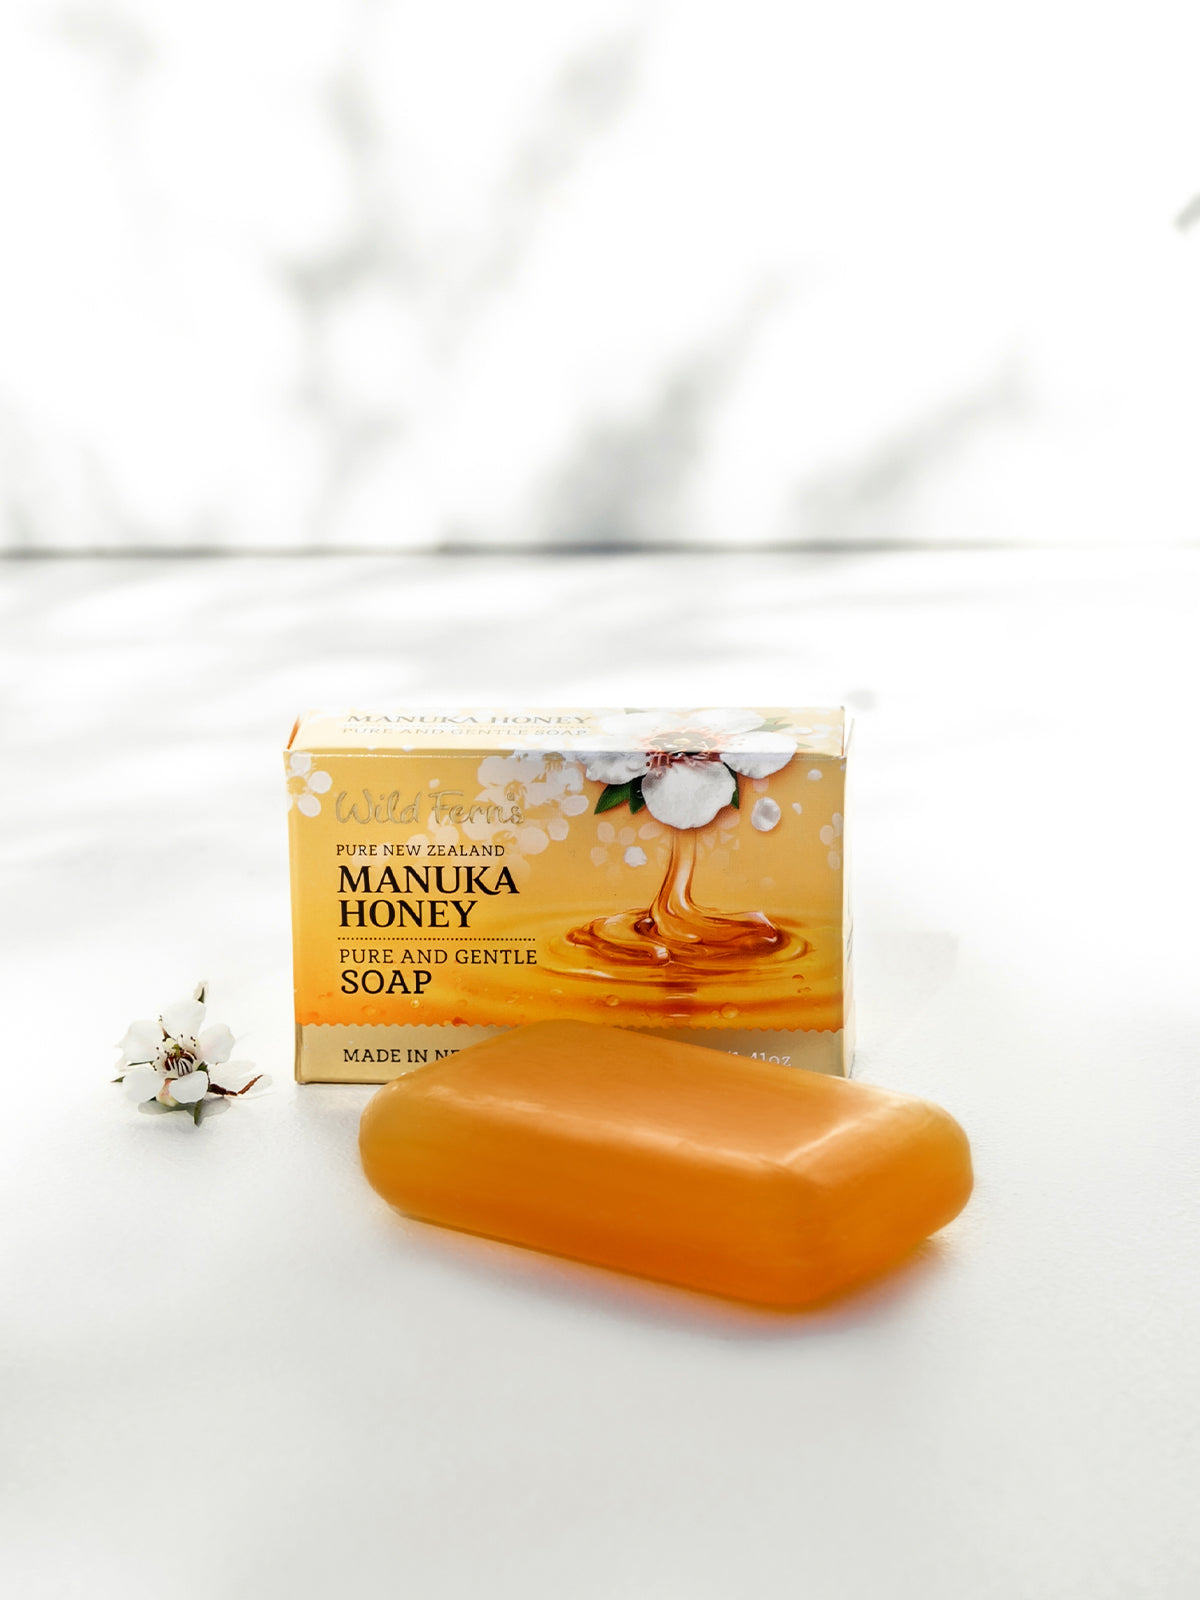 Wild Ferns Manuka Honey Pure & Gentle Soap, 40g Lifestyle 1